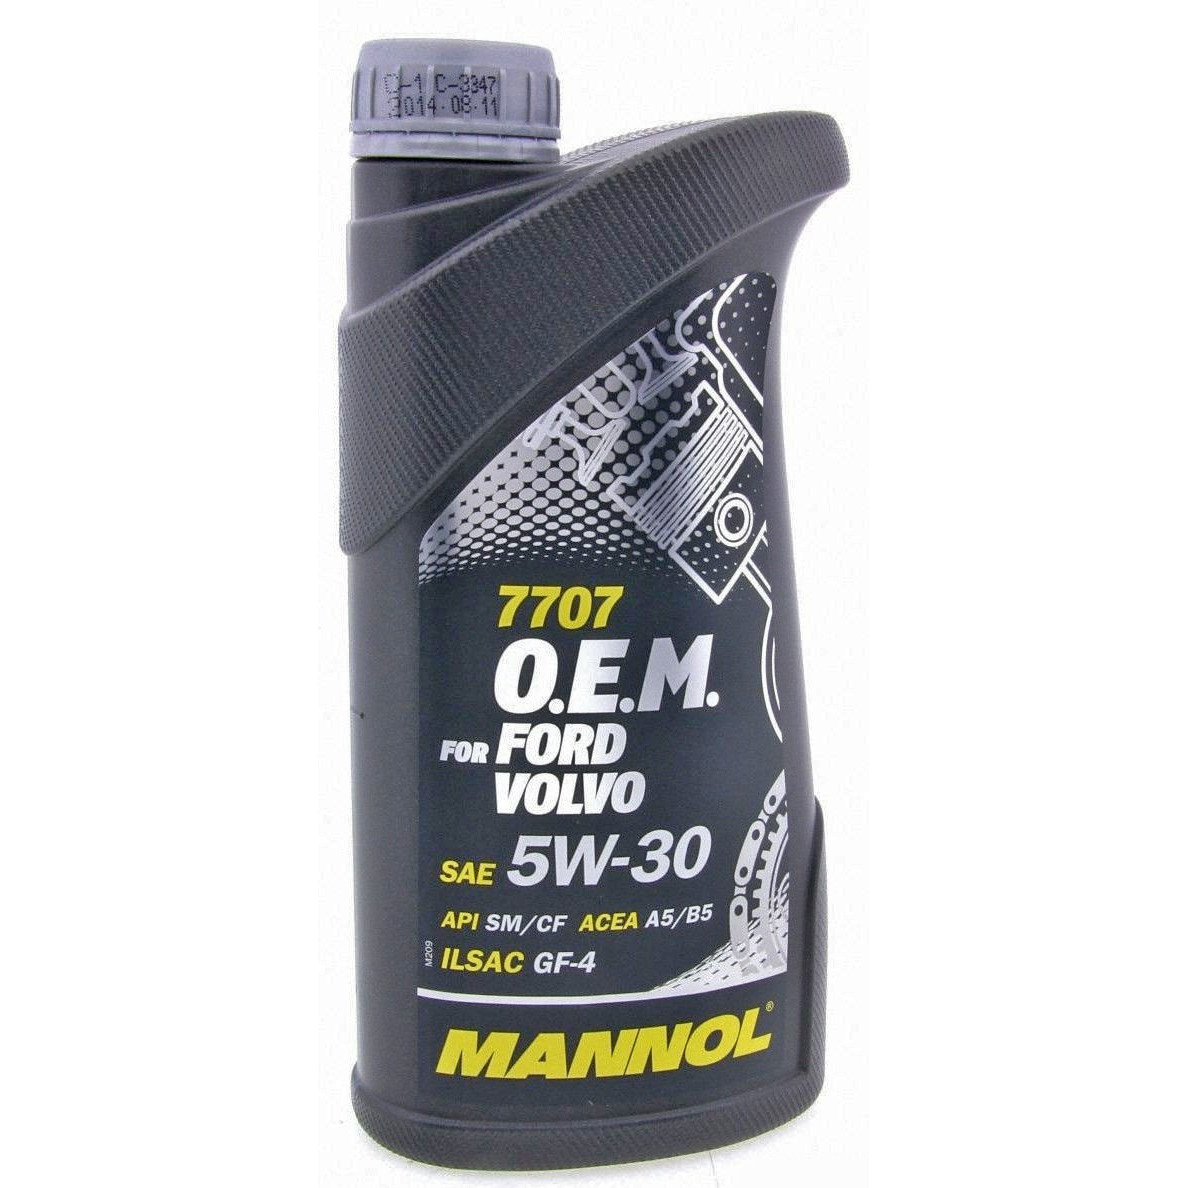 Mannol O.E.M. for Ford Volvo 5W-30 1л - зображення 1